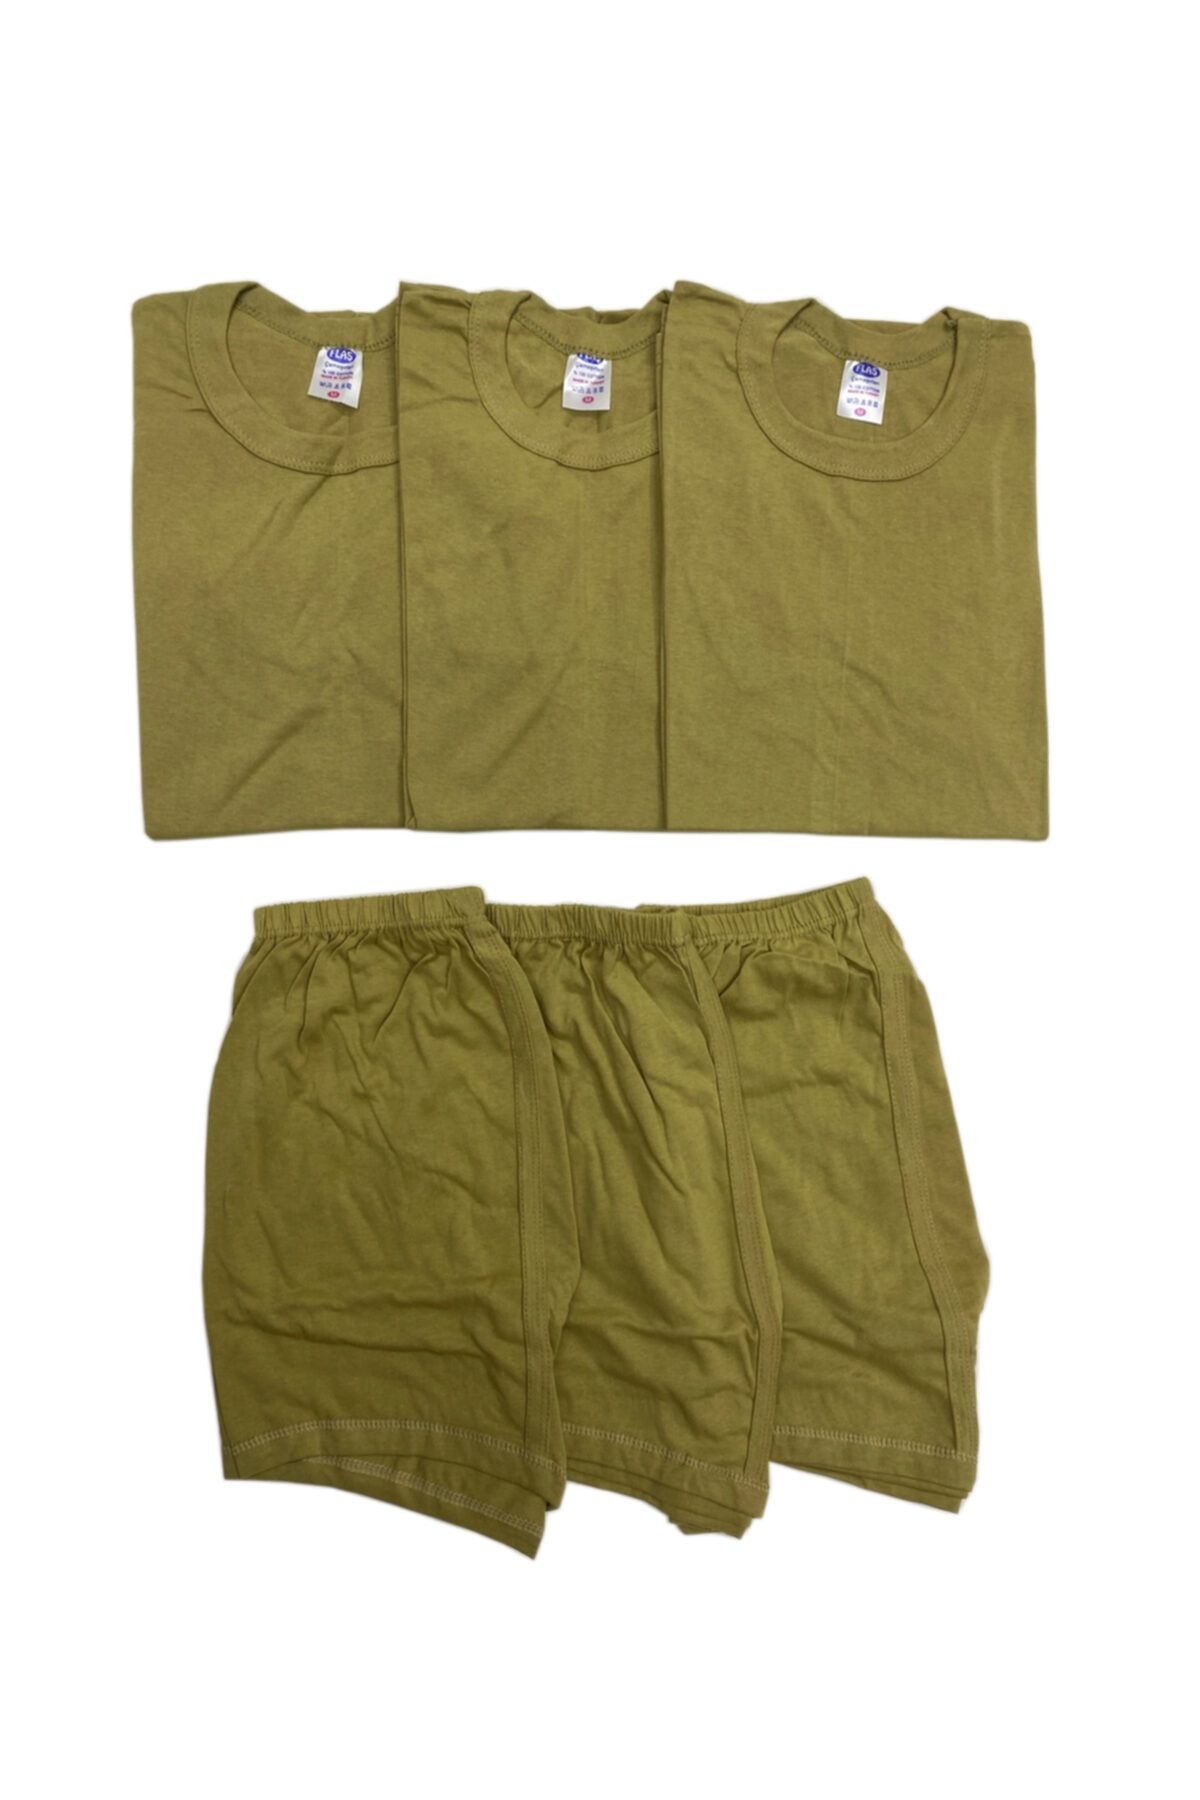 Genel Markalar Erkek Haki 3'lü Askeri Fanila Boxer Giyim Seti